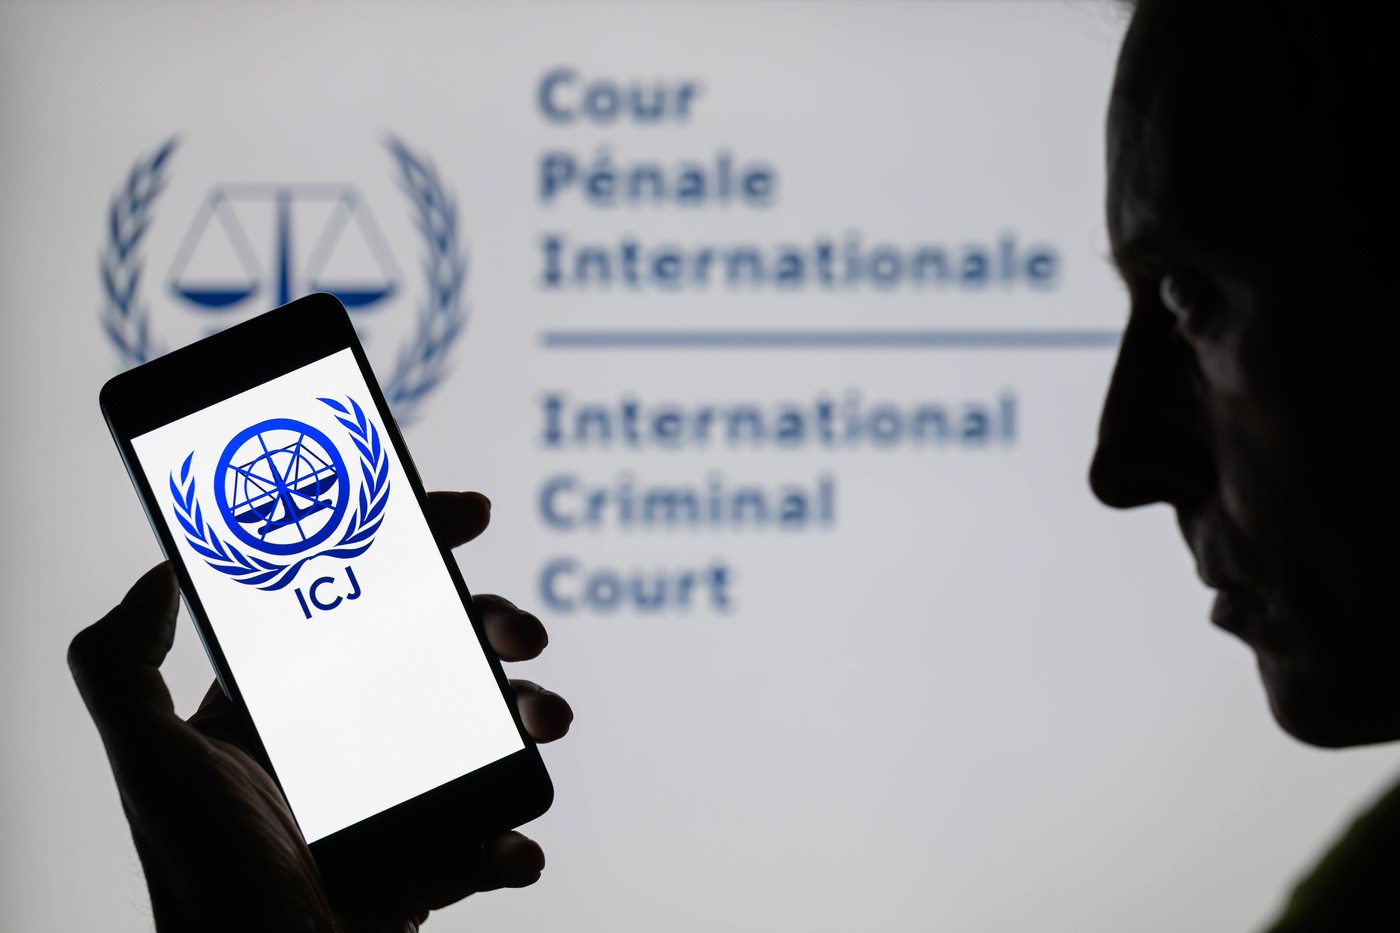 The International Court of Justice (ICJ) / Međunarodni sud pravde